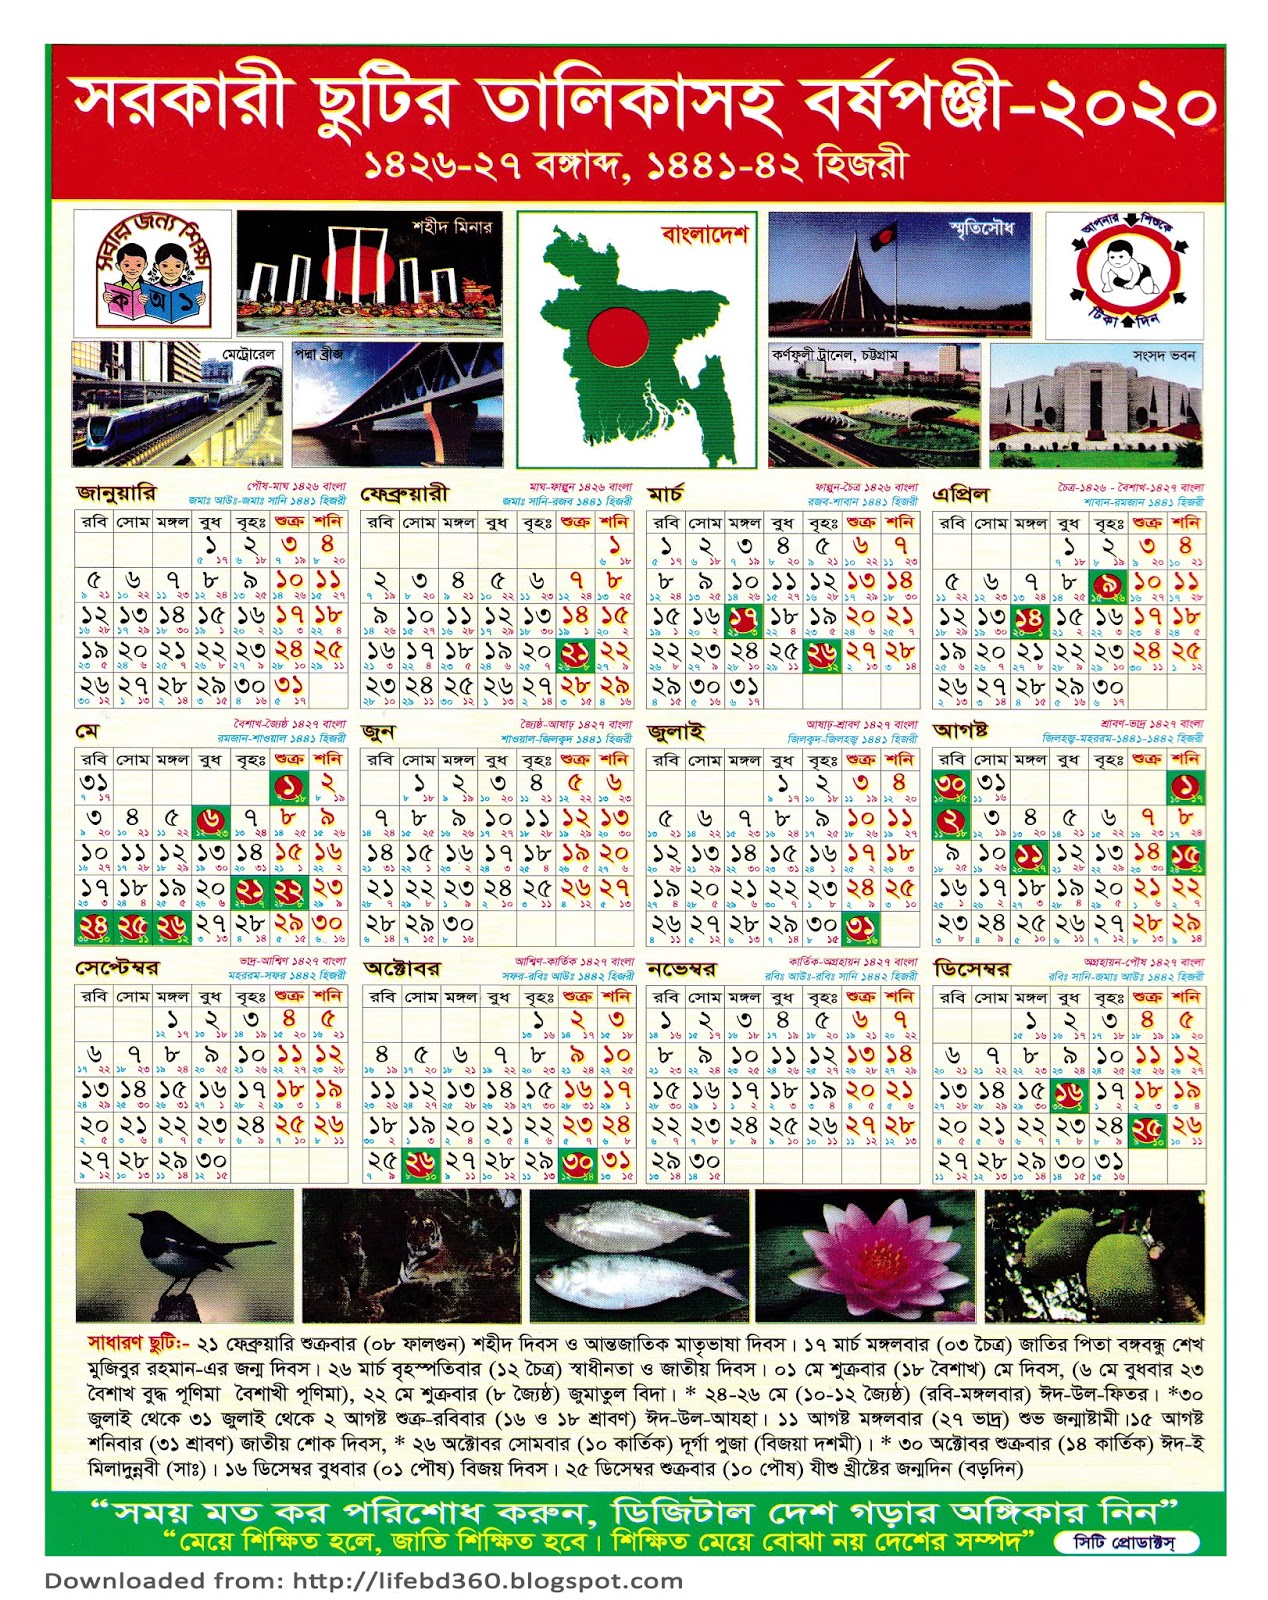 Islamic Calendar 2024 Bangladesh Calendar 2024 Ireland Printable